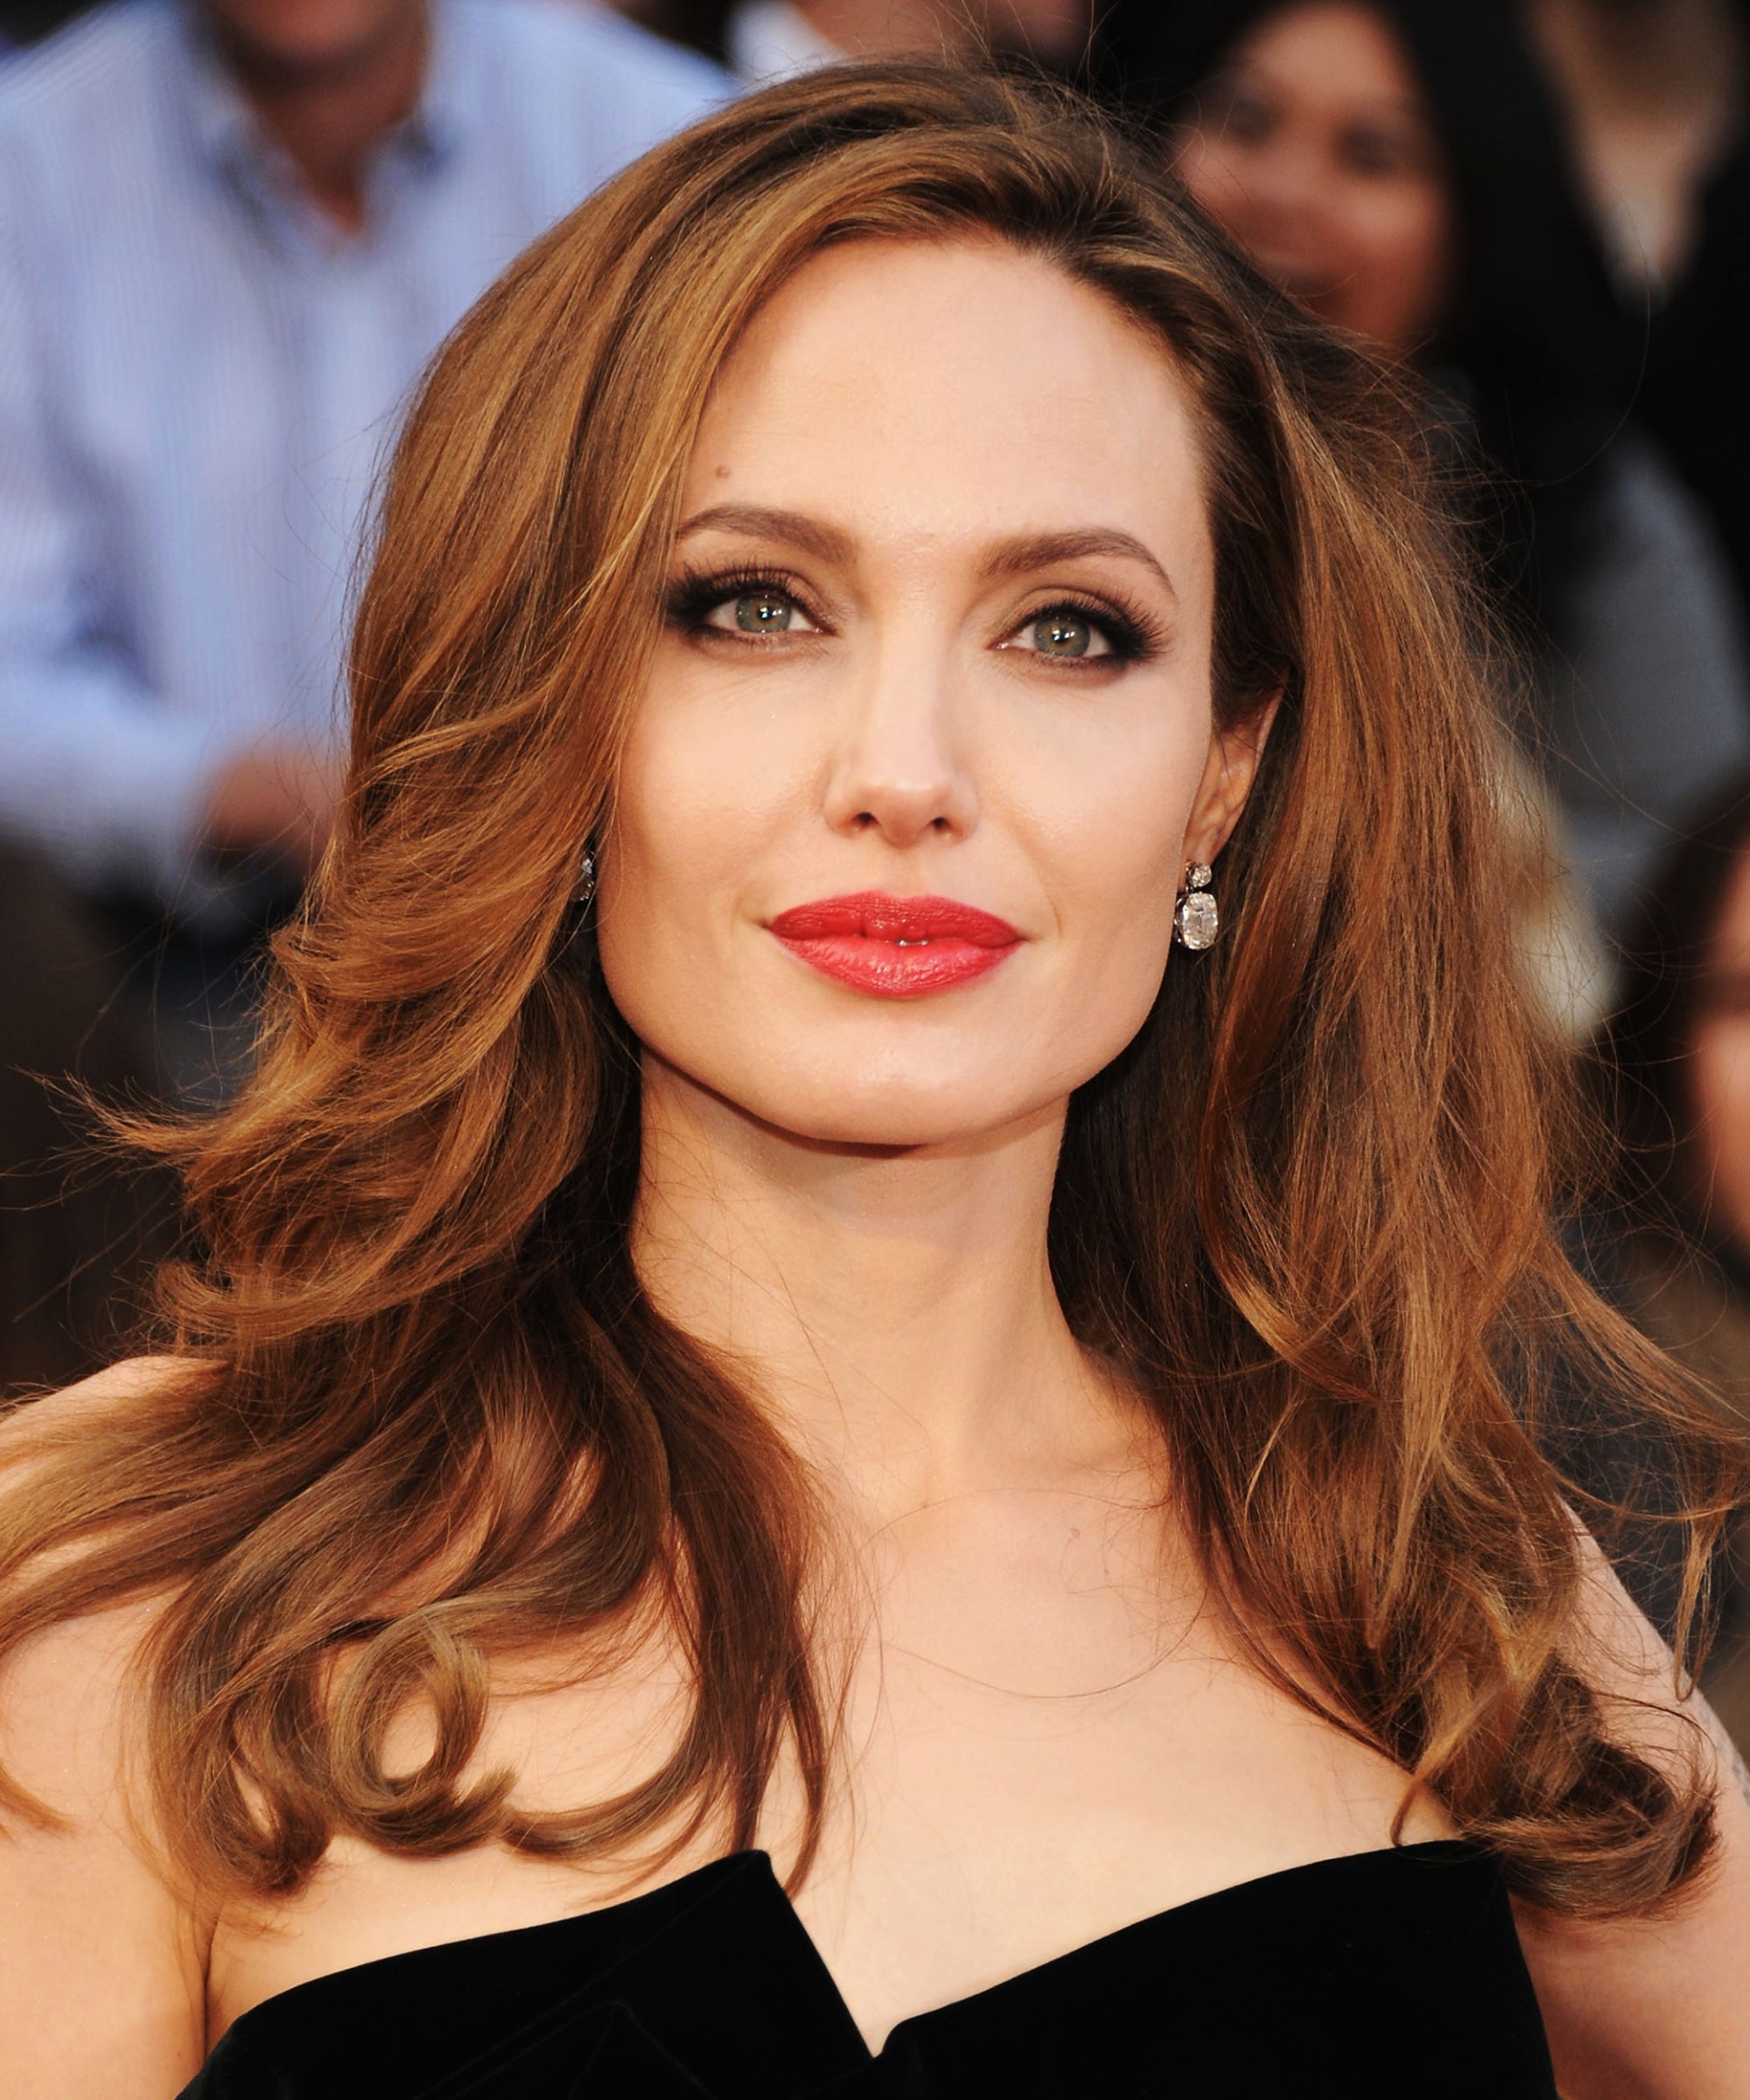 Vẻ đẹp hoàn mỹ theo thời gian của Angelina Jolie - 20 ảnh